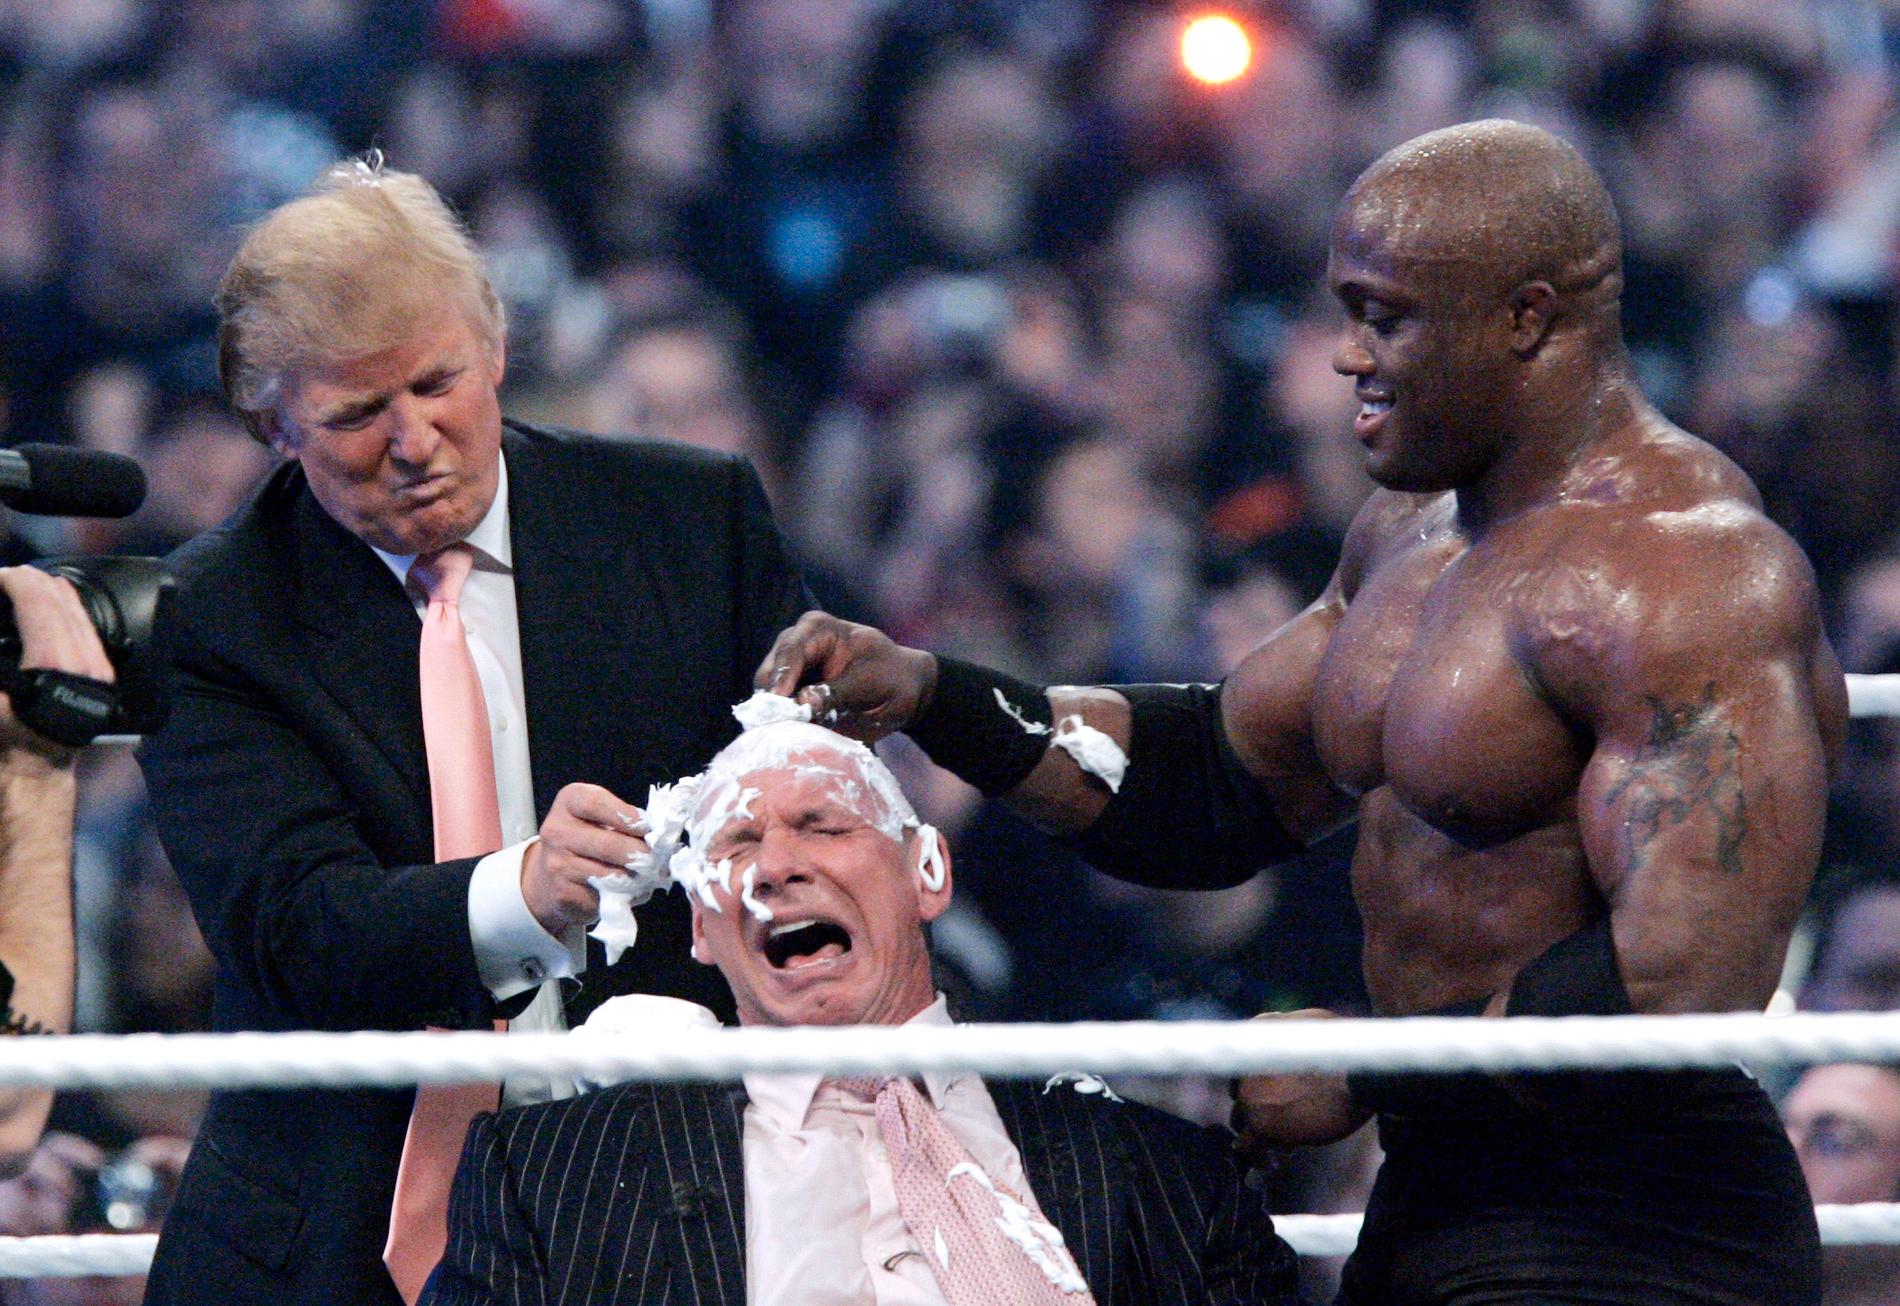 Trump rakar håret på wrestlinghöjdaren Vince McMahon efter att ha brottat ned honom utanför ringen i samband med en match 2007. Arkivbild.